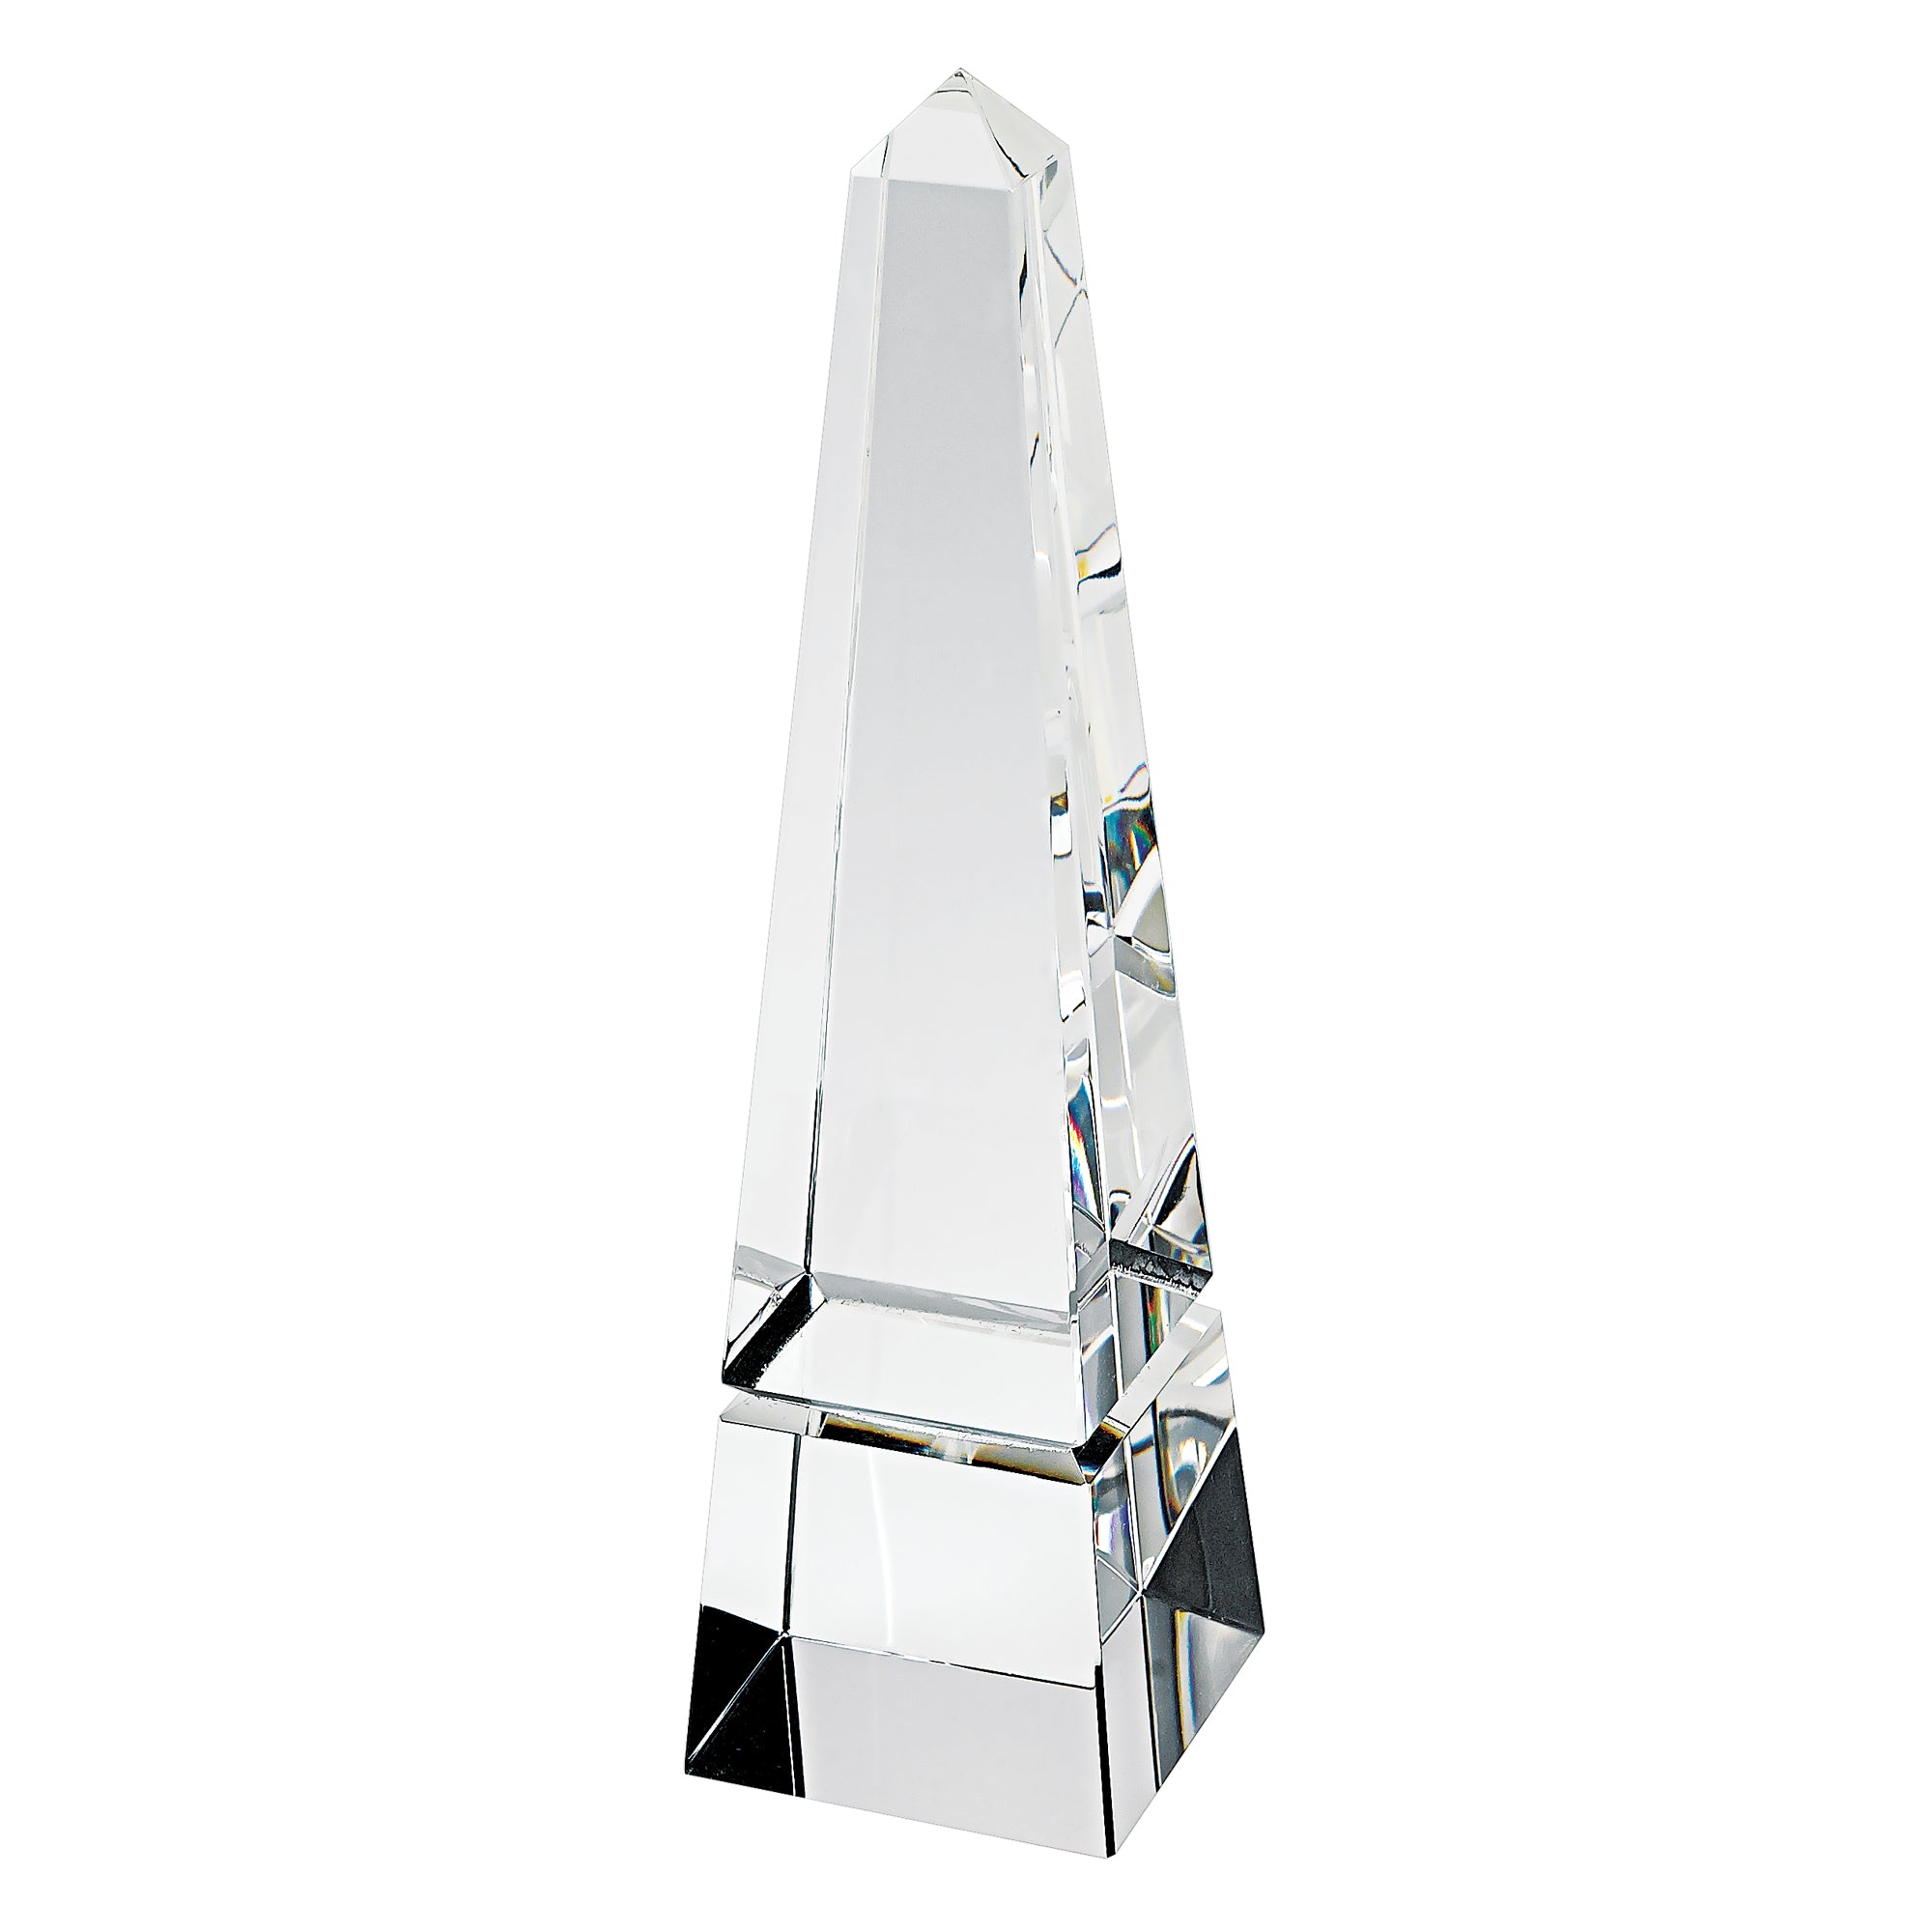 12" Clear Crystal Obelisk Statue